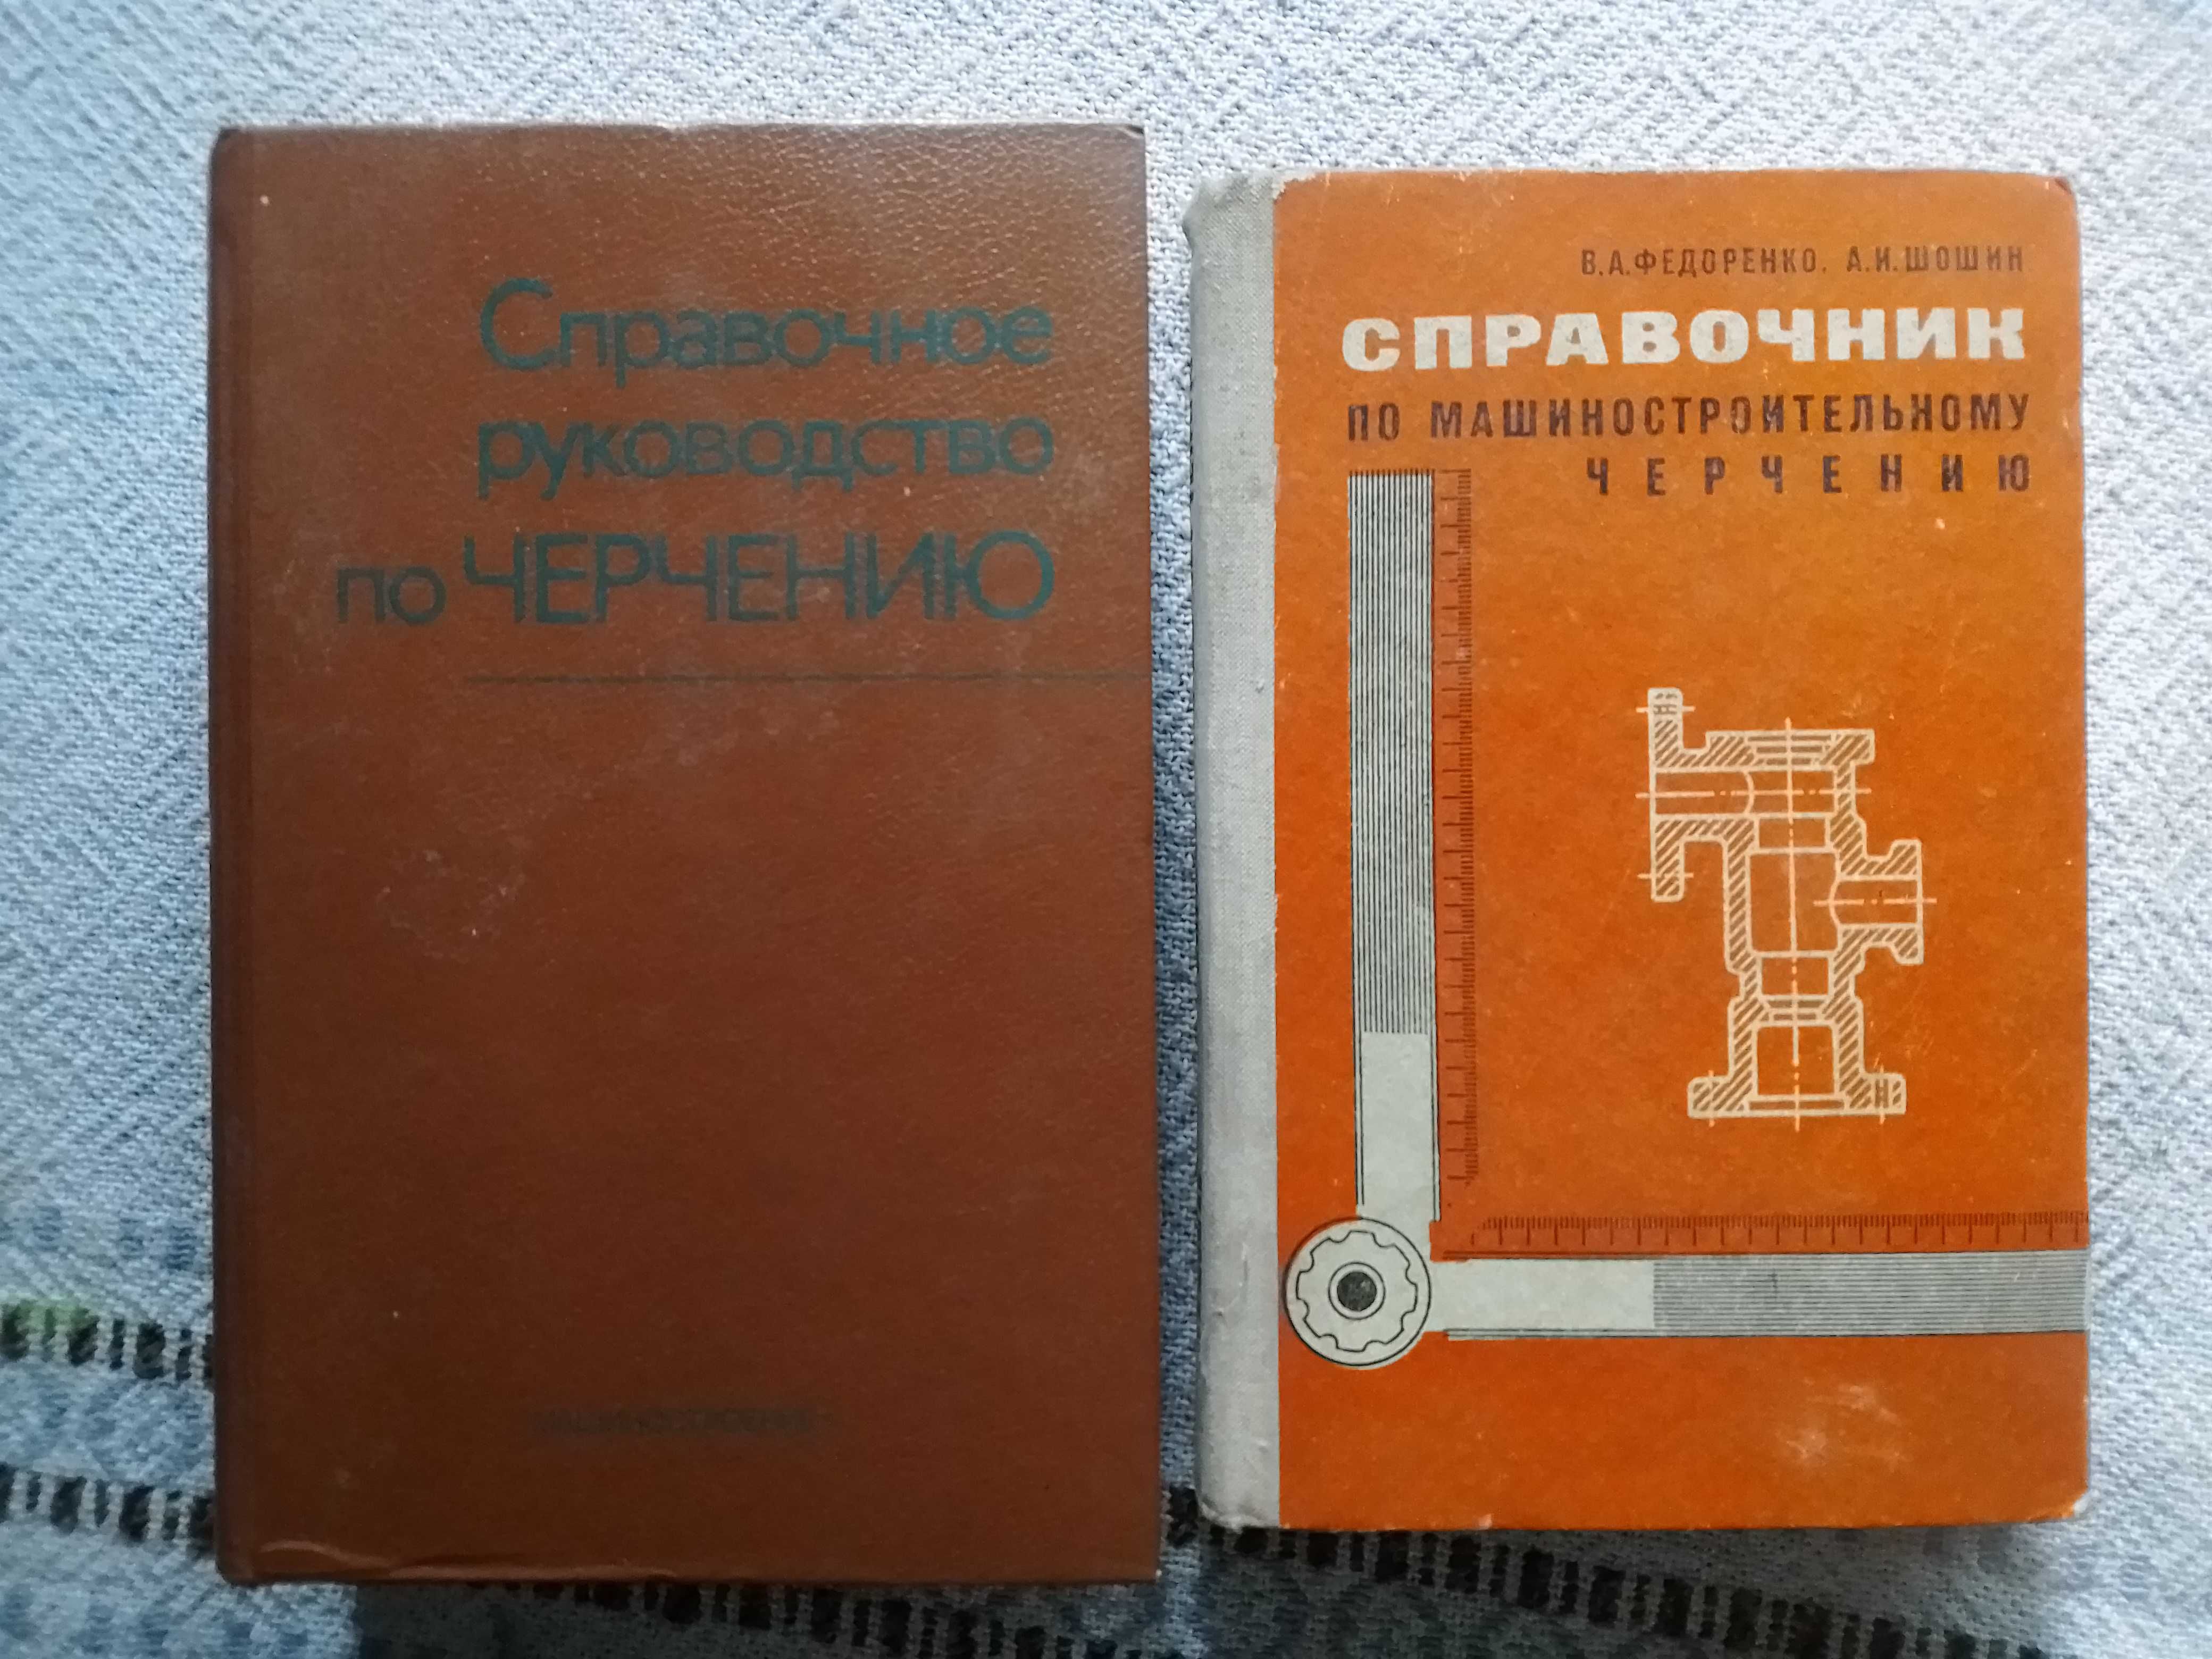 "Справочное руководство по черчению". 1959 и др. книги по черчению